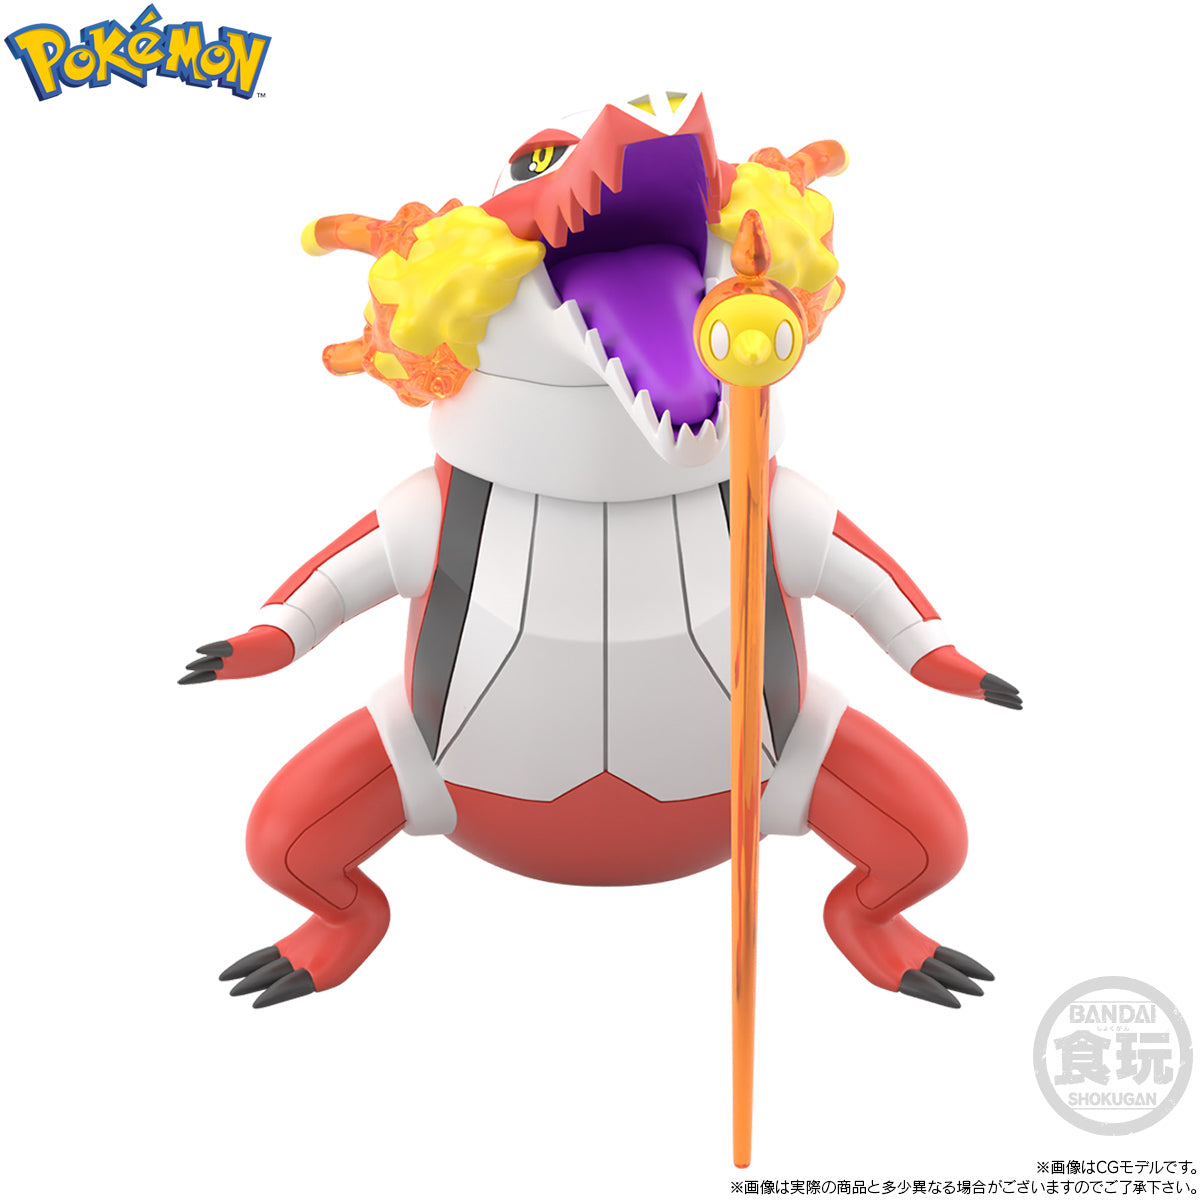 Bandai - Shokugan - Pokemon Scale World Galar Region - Nemona &amp; Skeledirge &amp; Pawmot - Marvelous Toys